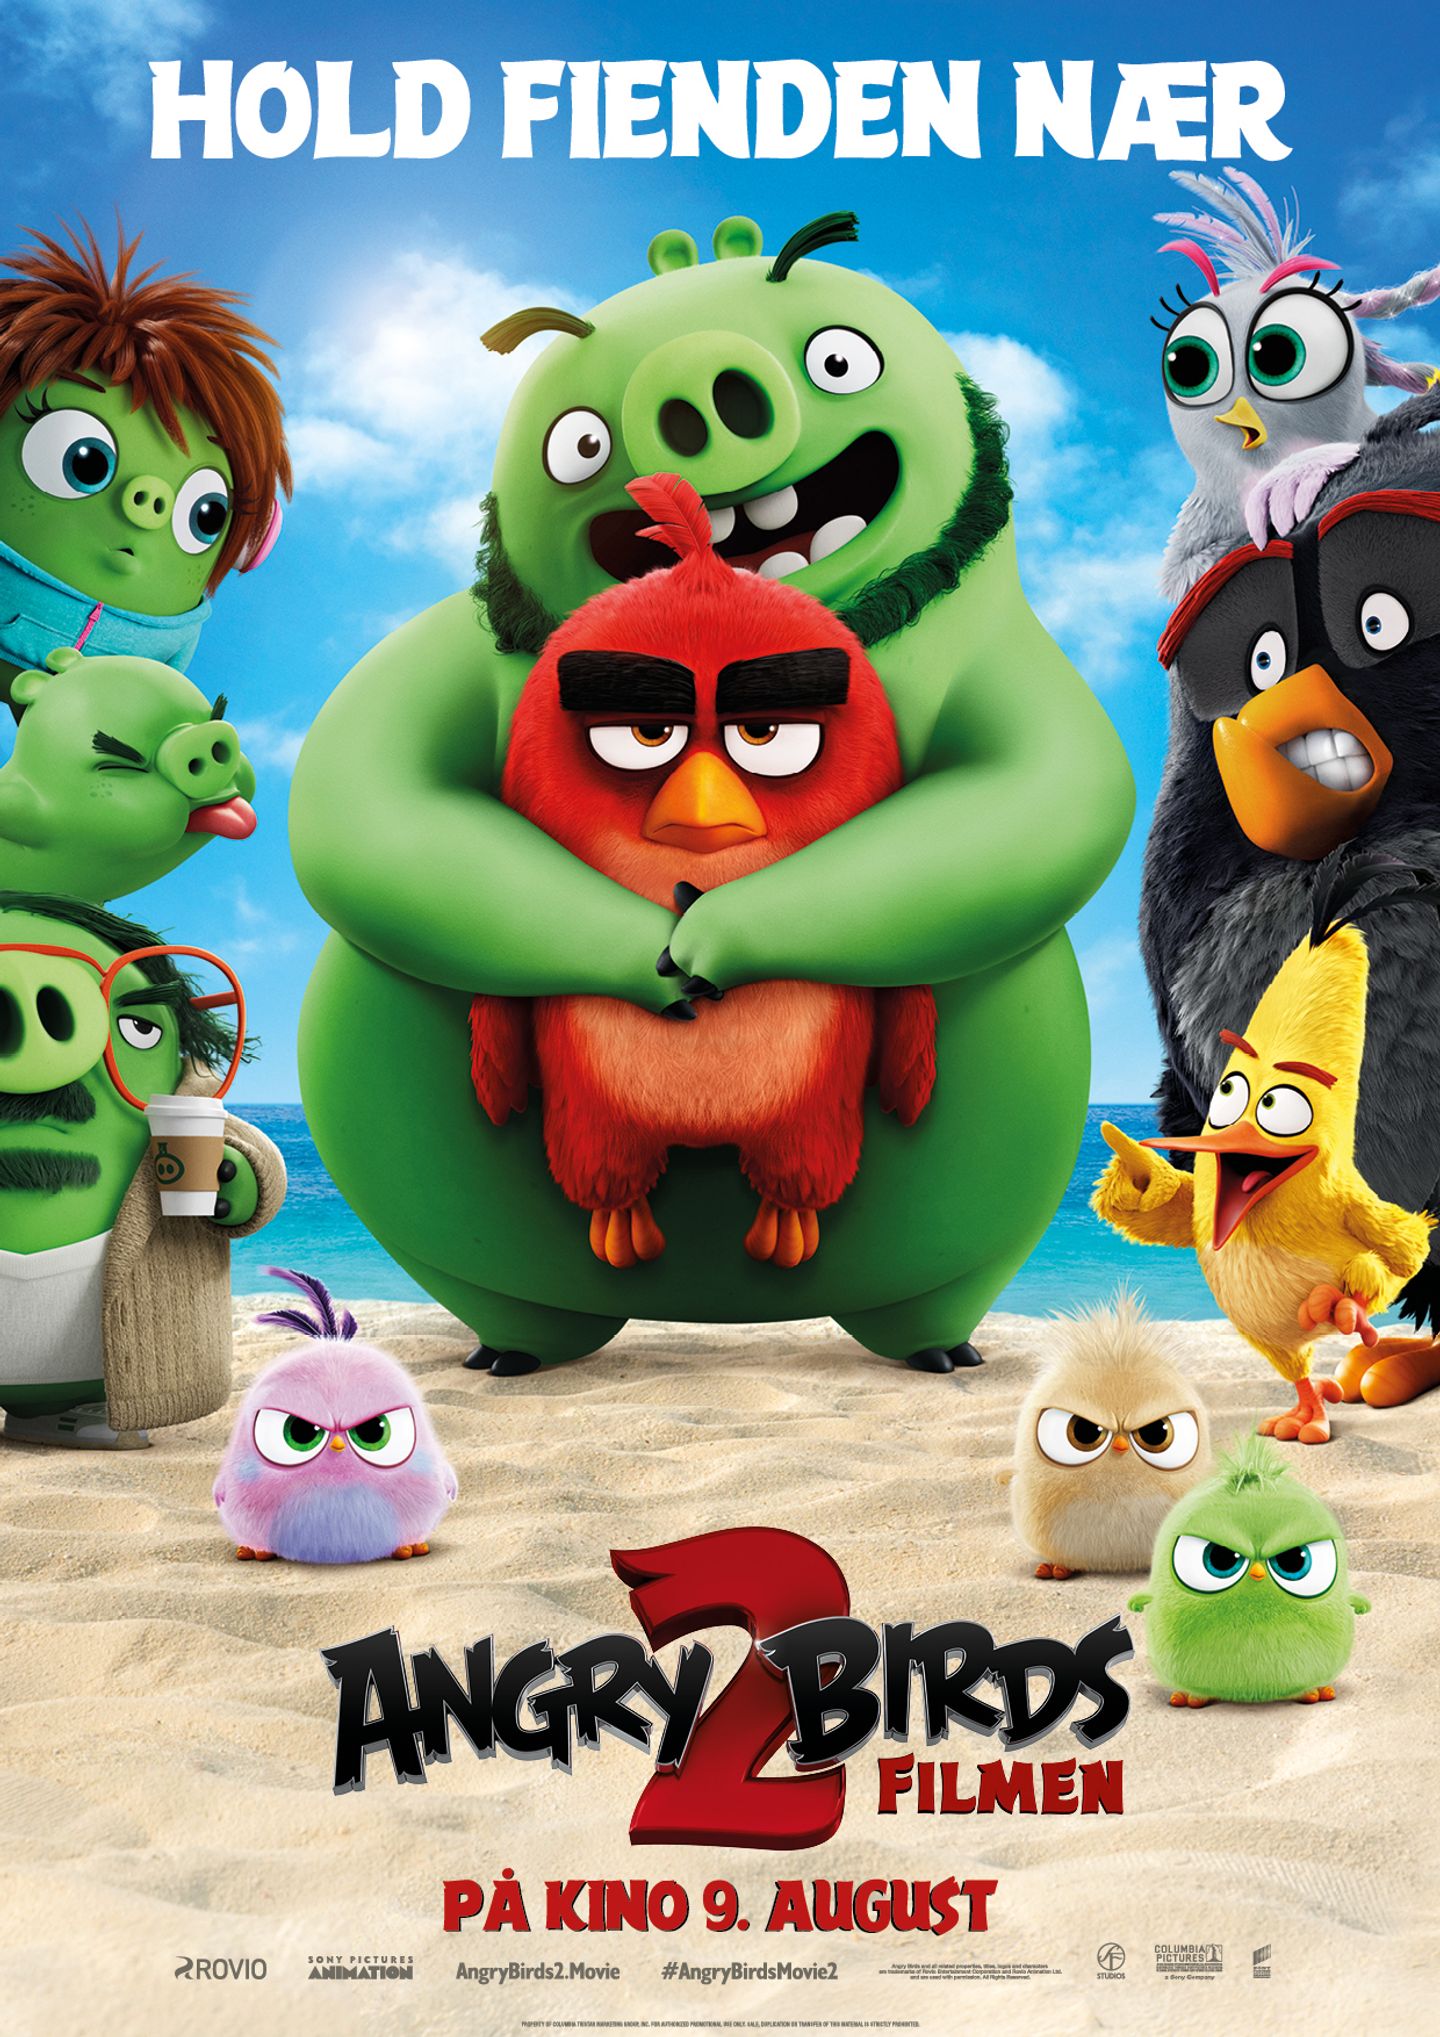 Plakat for 'Angry Birds filmen 2'